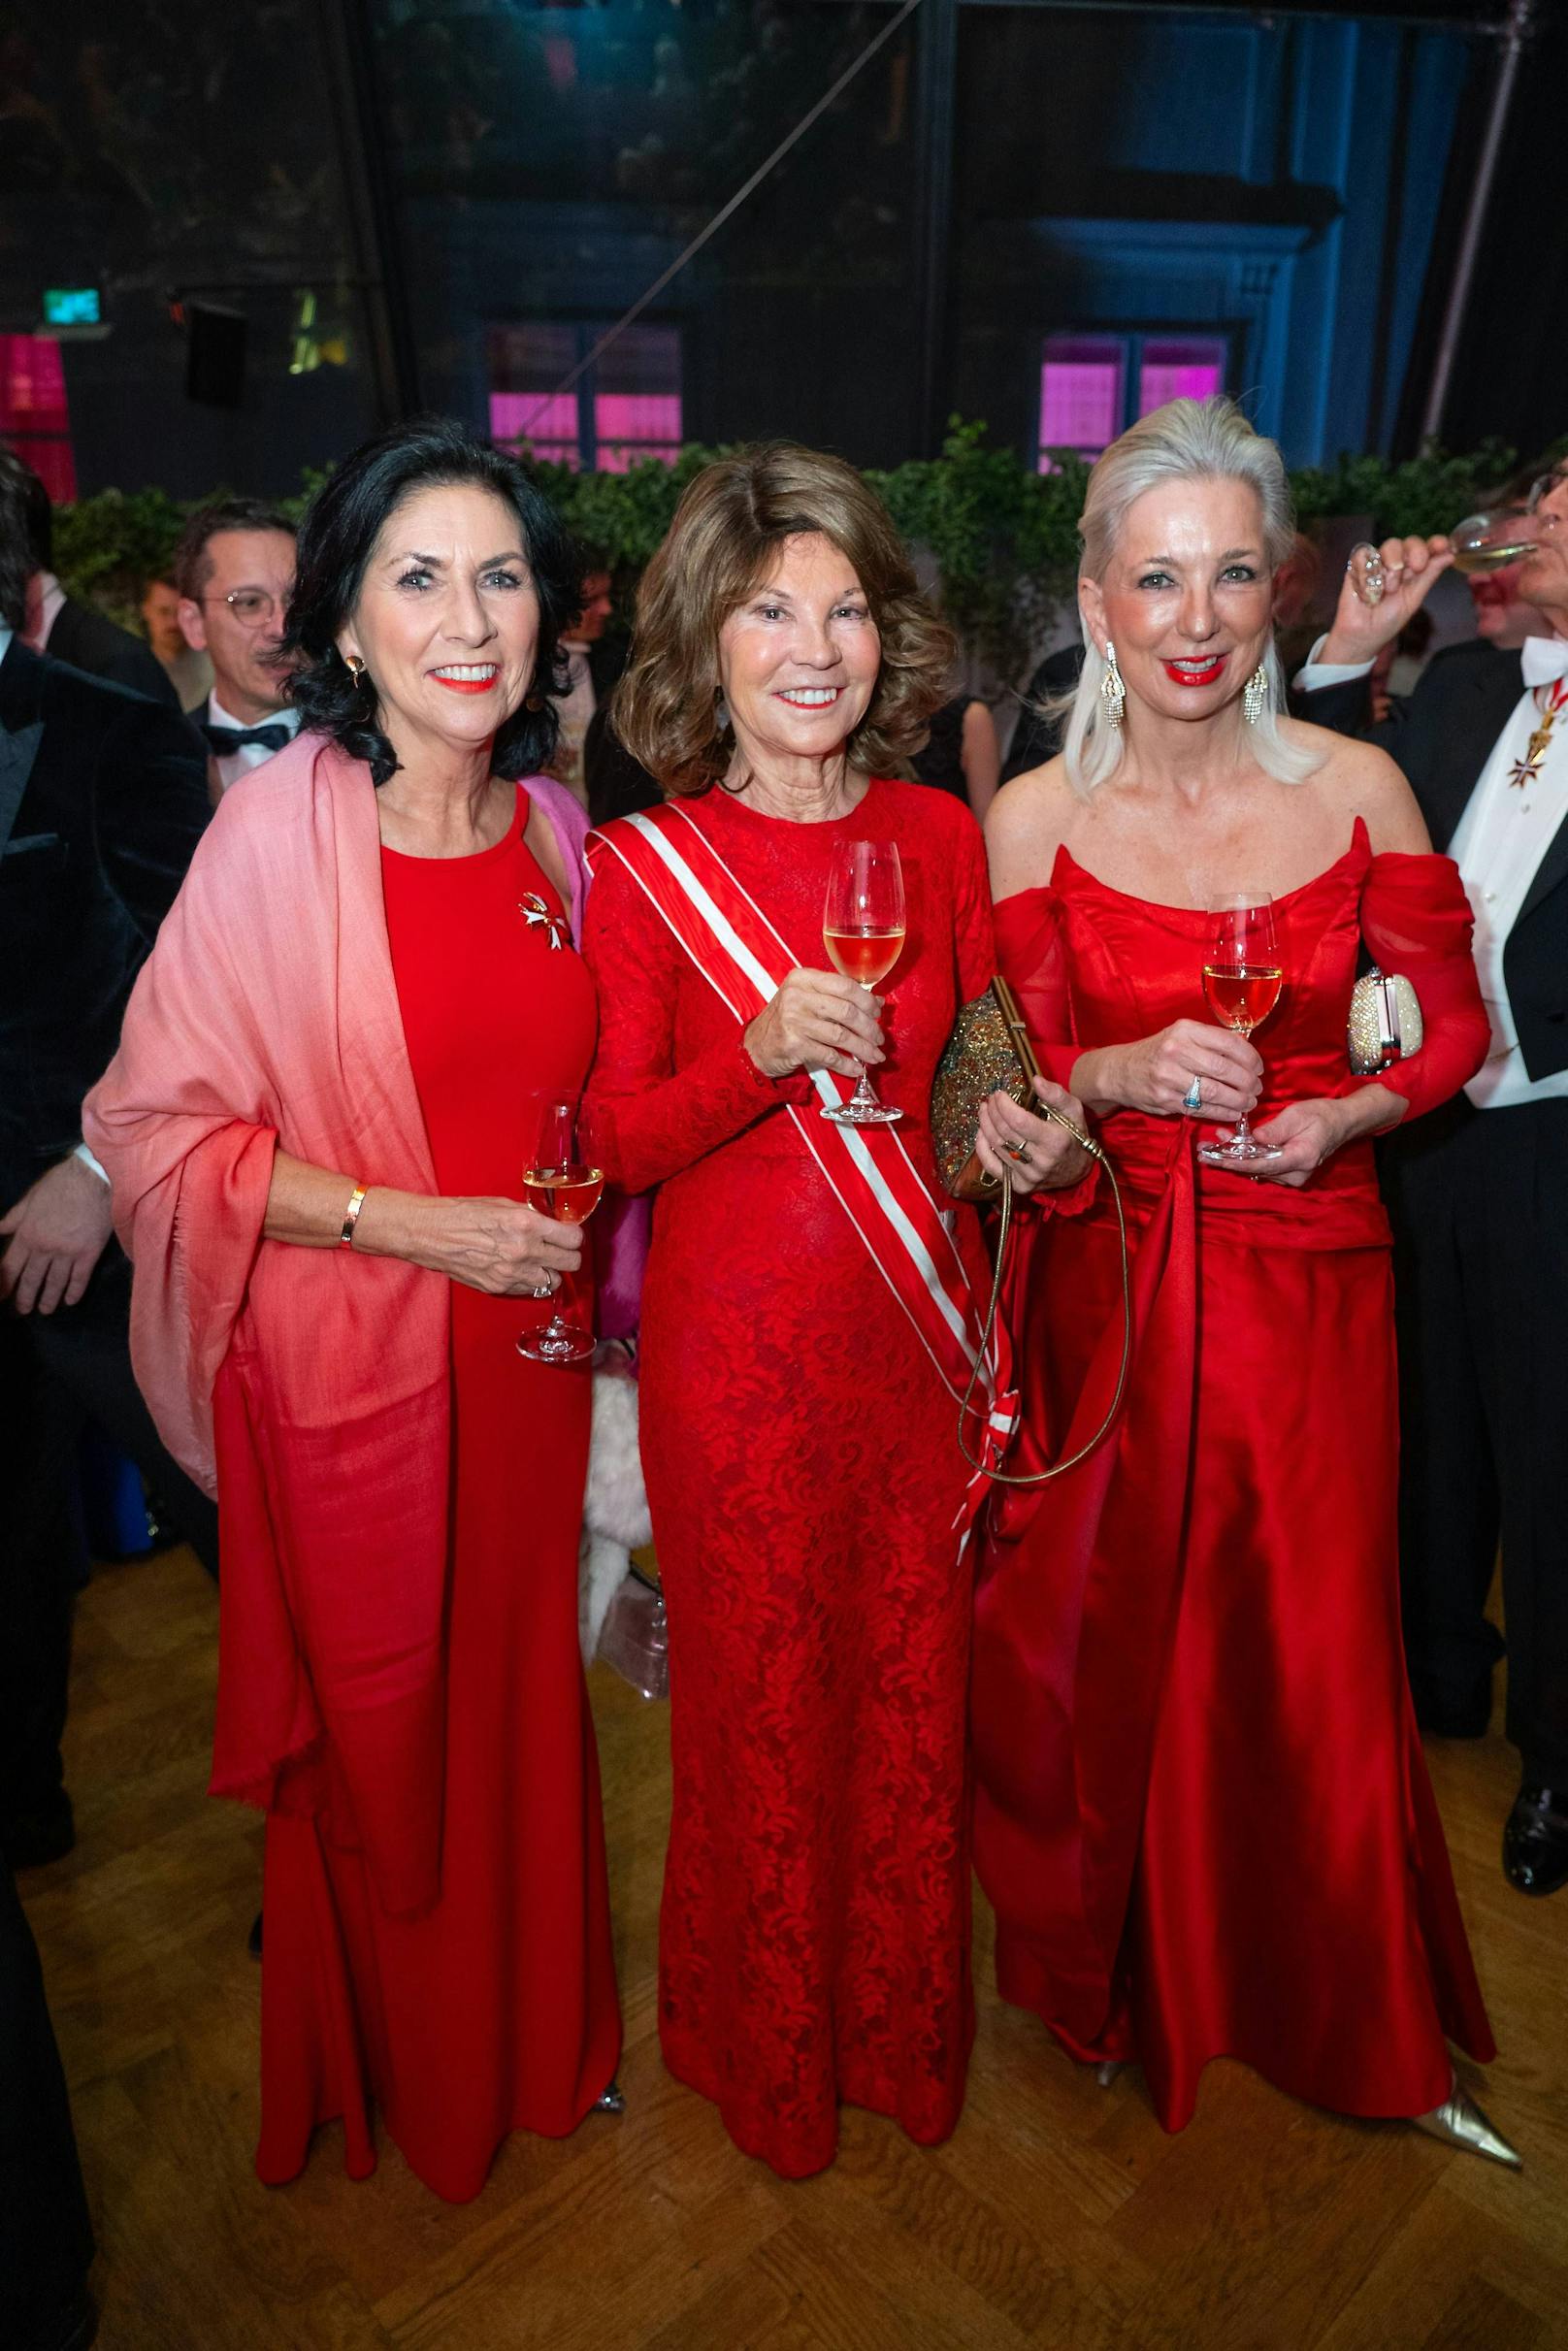 "Ladys in Red": Danielle Spera, Brigitte BIERLEIN, Martina Fasslabend